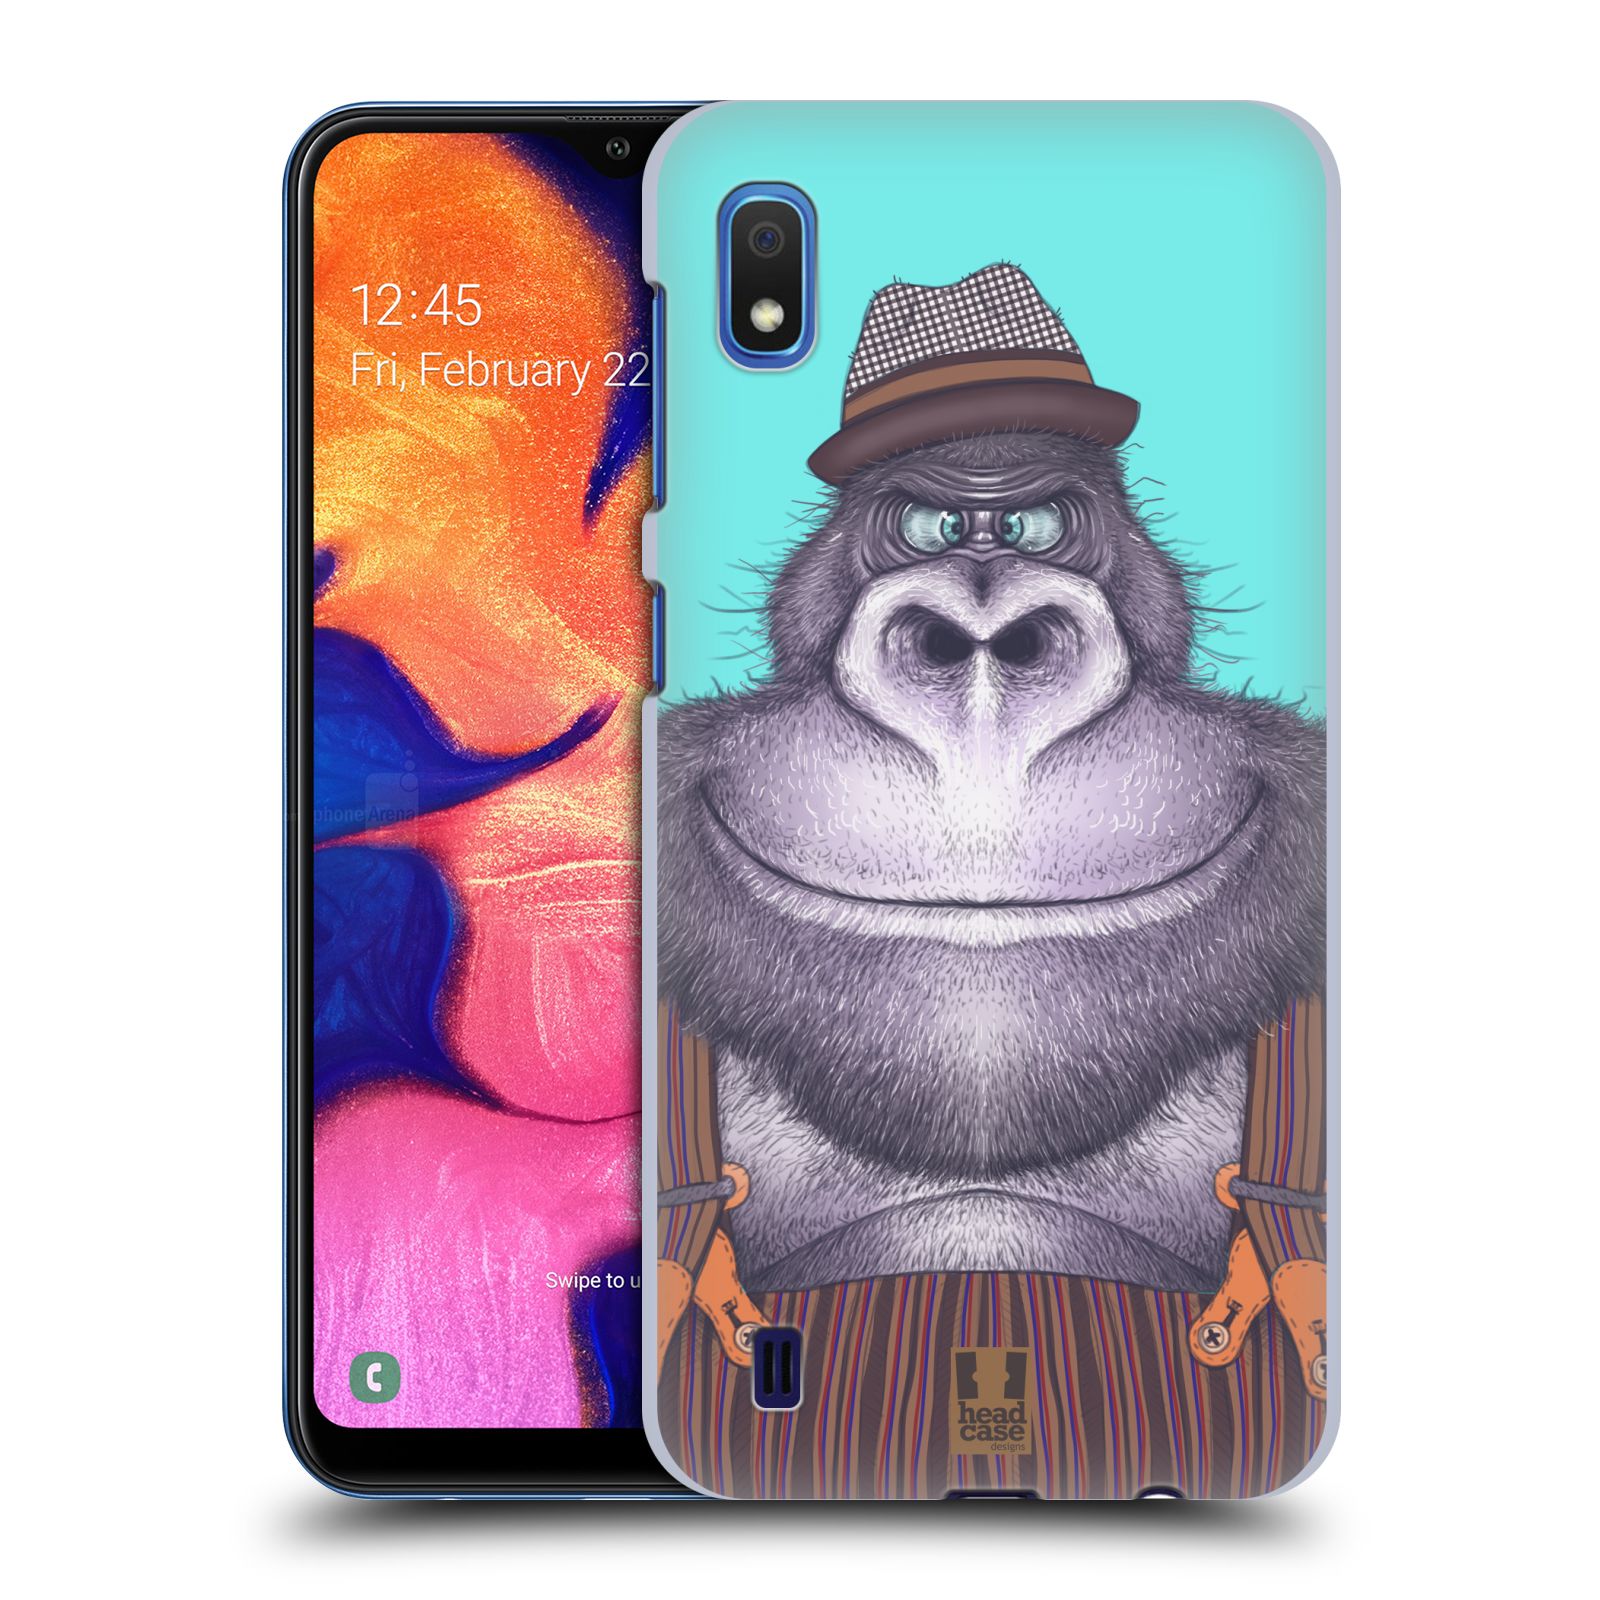 Pouzdro na mobil Samsung Galaxy A10 - HEAD CASE - vzor Kreslená zvířátka gorila